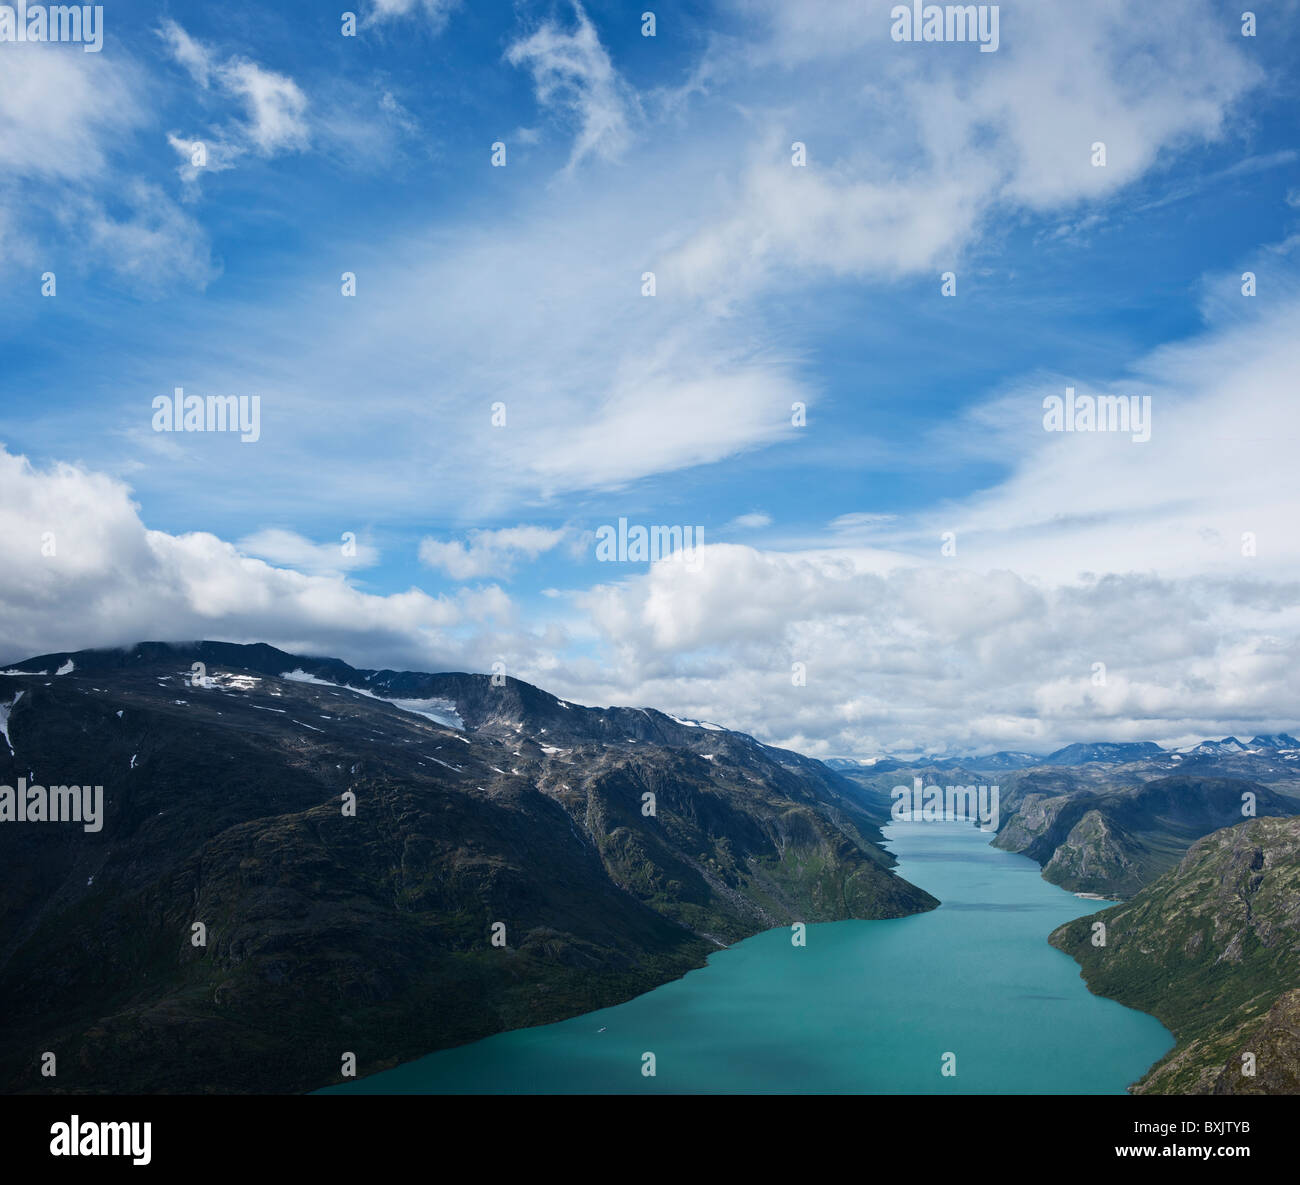 Le pittoresque lac Gjende, le parc national de Jotunheimen, Norvège Banque D'Images